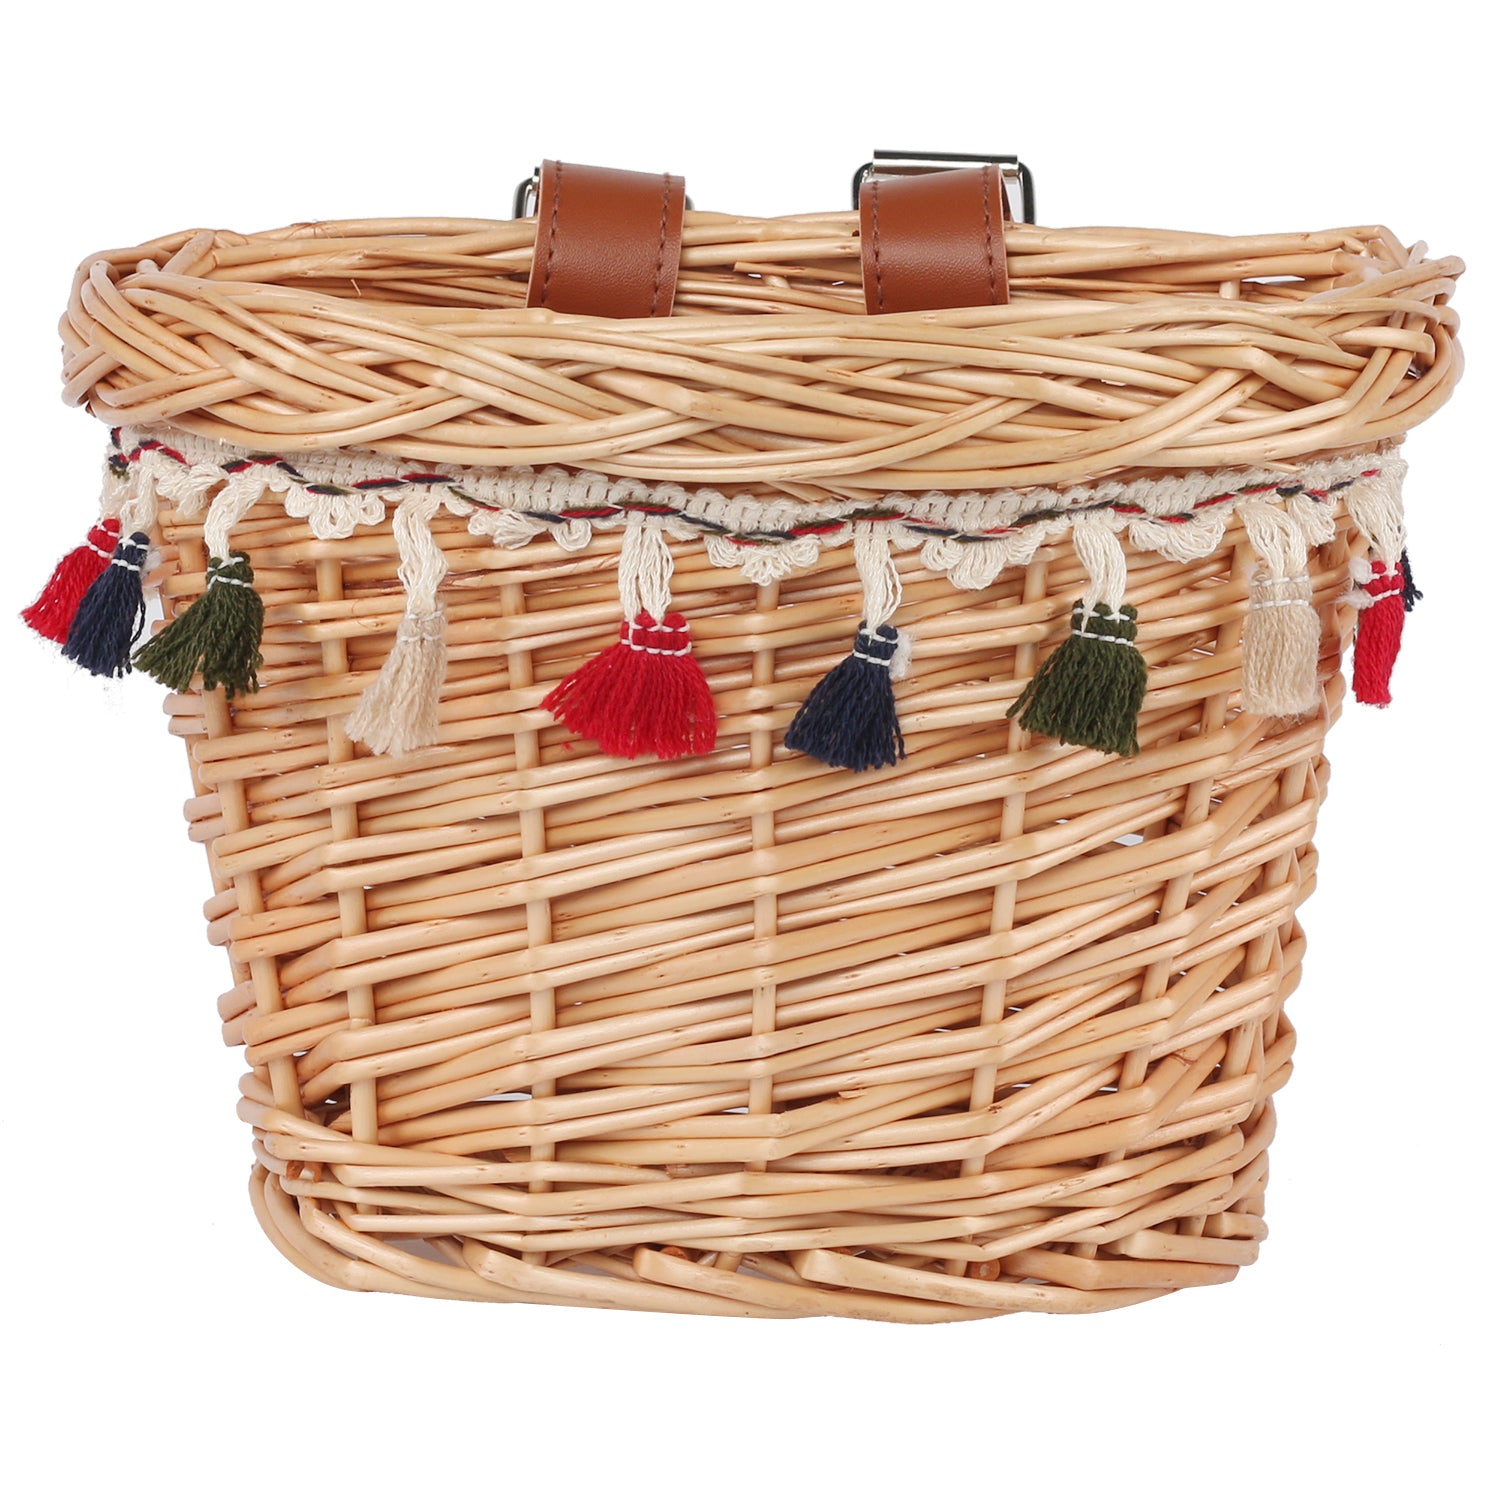 Honey Wicker Basket with Tassels